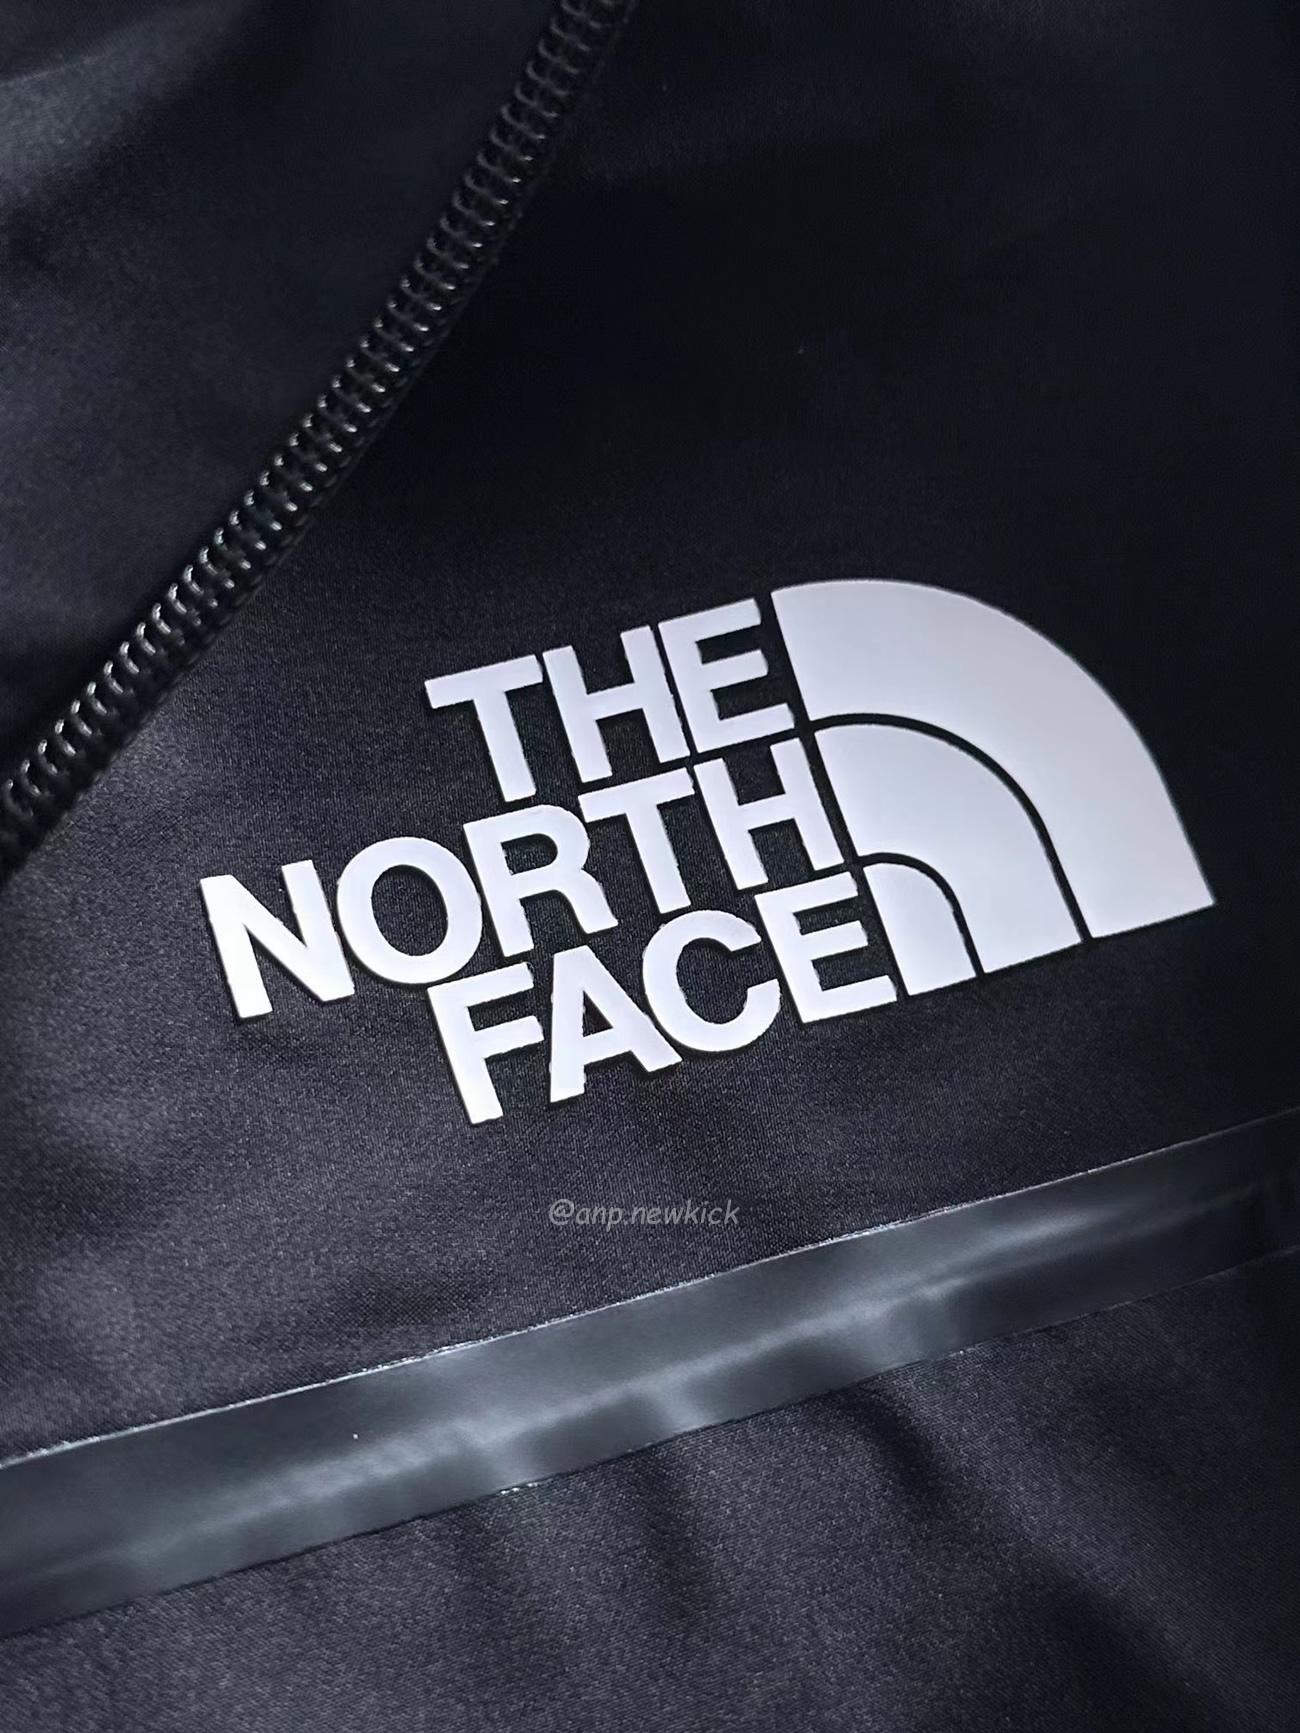 The North Face Futurelight Mountain Nmist Jacket (9) - newkick.org